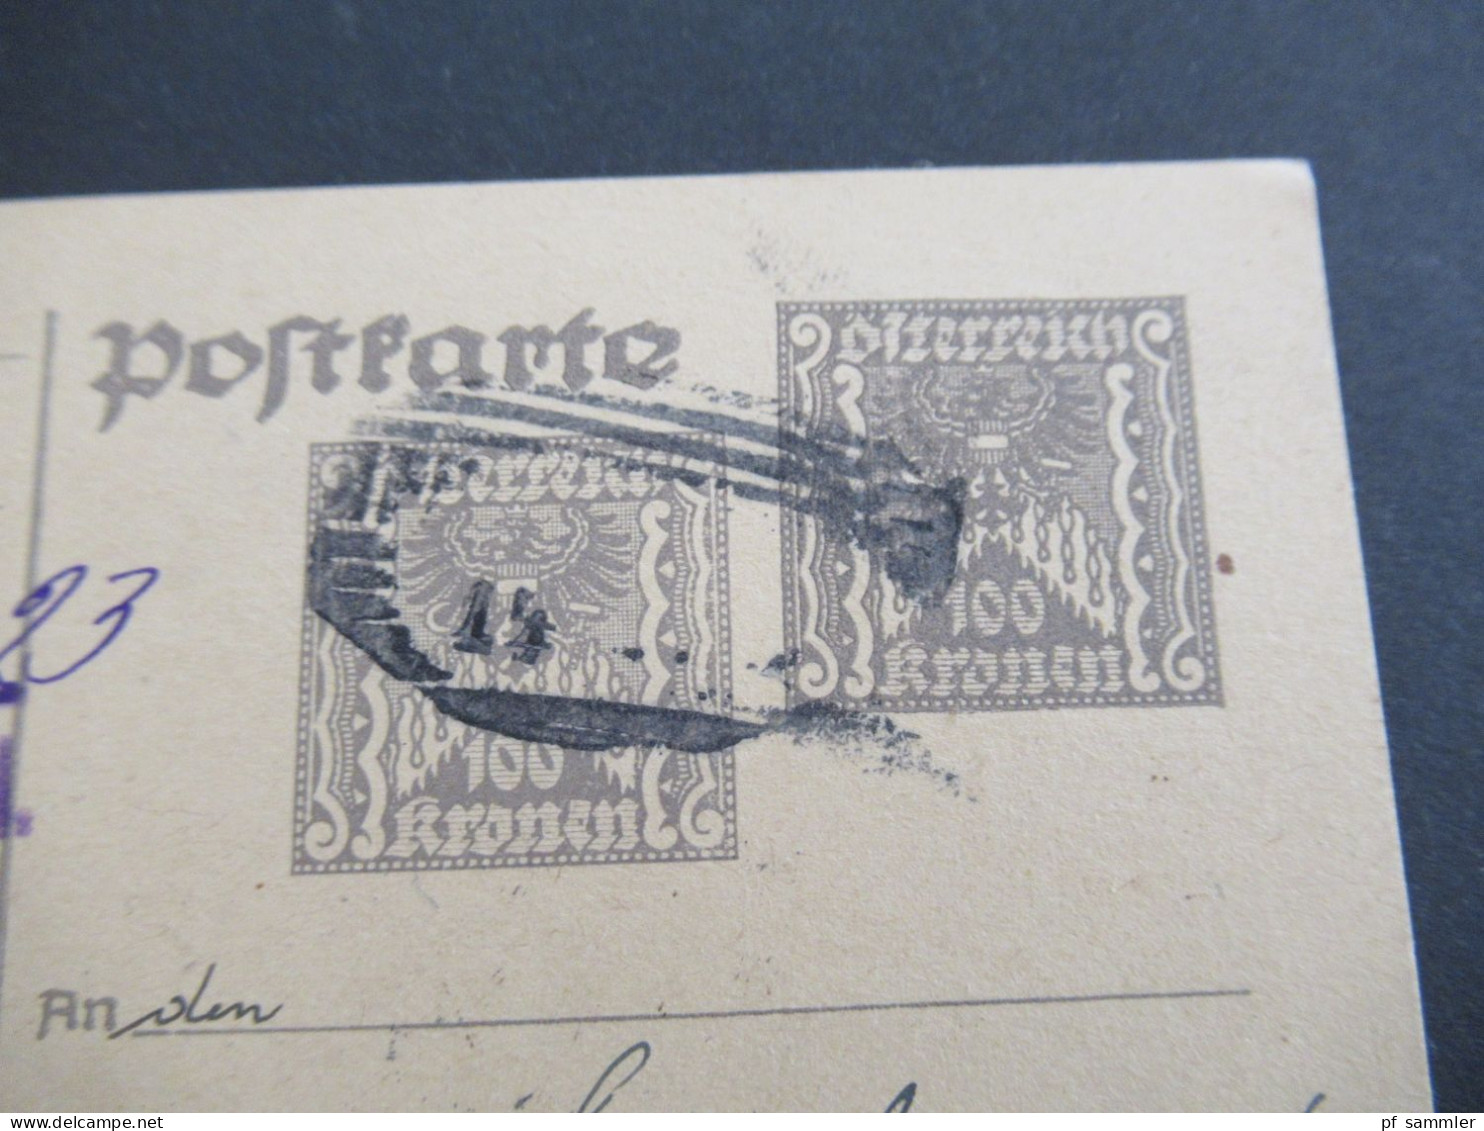 Österreich 1923 Inflation Ganzsache 2x 100 Kronen Abs. Stempel Pfarrbauernrat Deutsch Feistritz Peggau - Postkarten